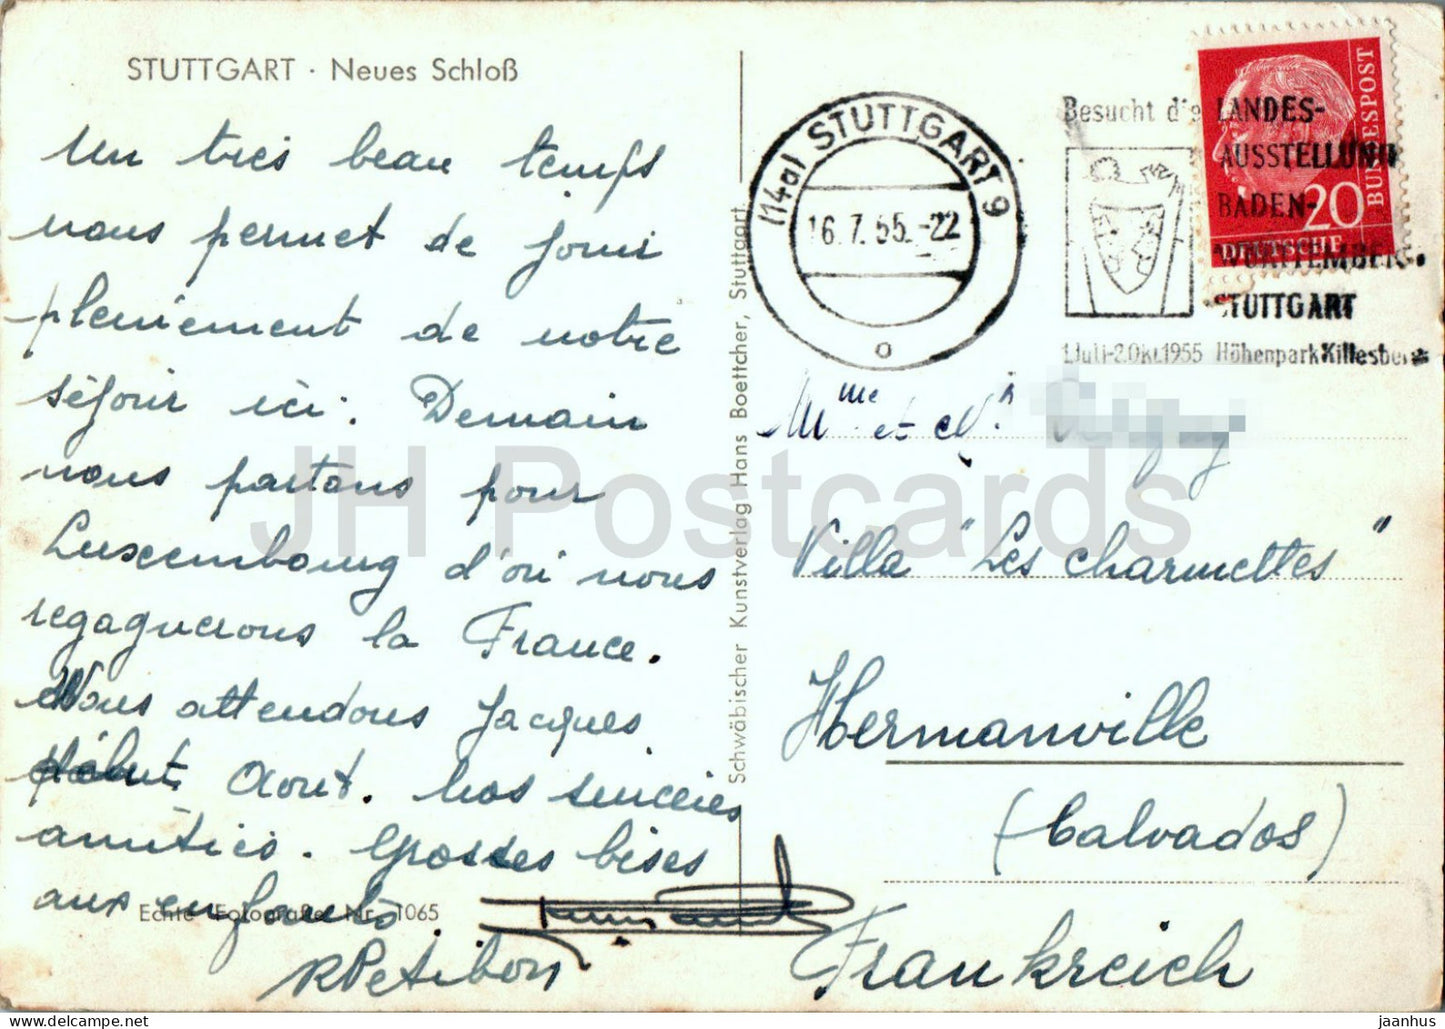 Stuttgart - Neues Schloss - 1065 - alte Postkarte - 1955 - Deutschland - gebraucht 